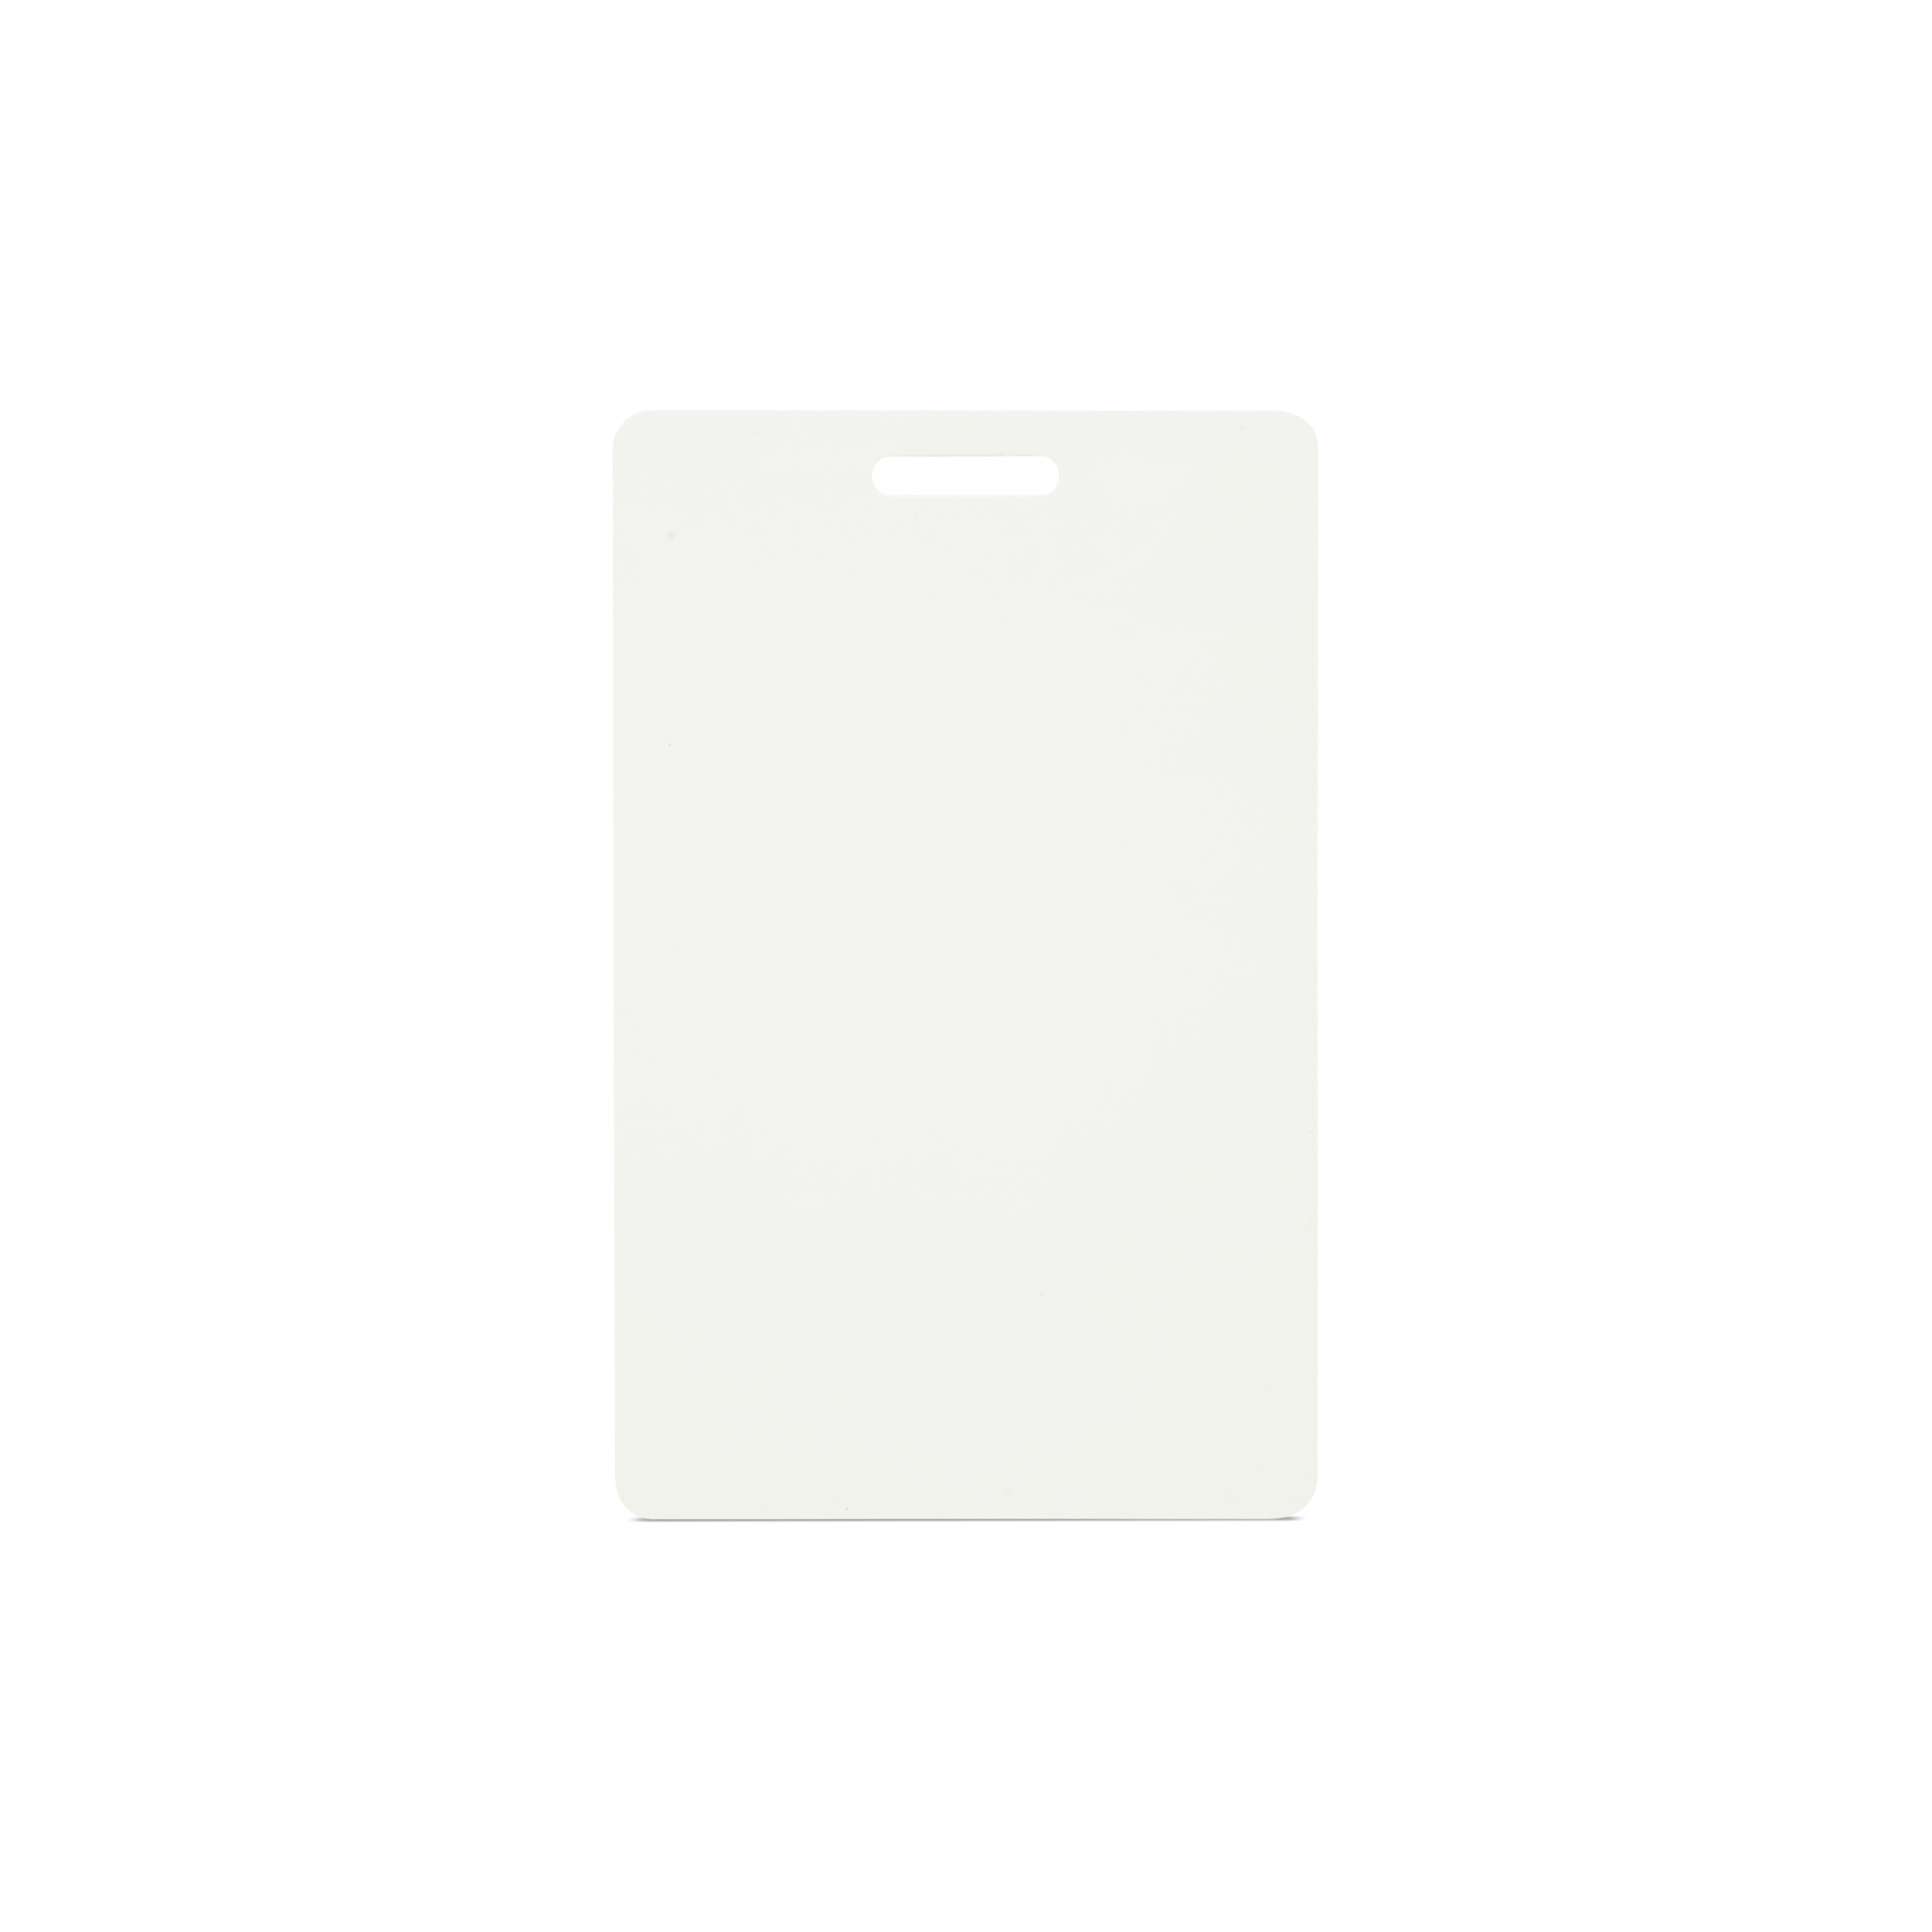 Vertikal stehende NFC Karte in weiß mit Schlitz